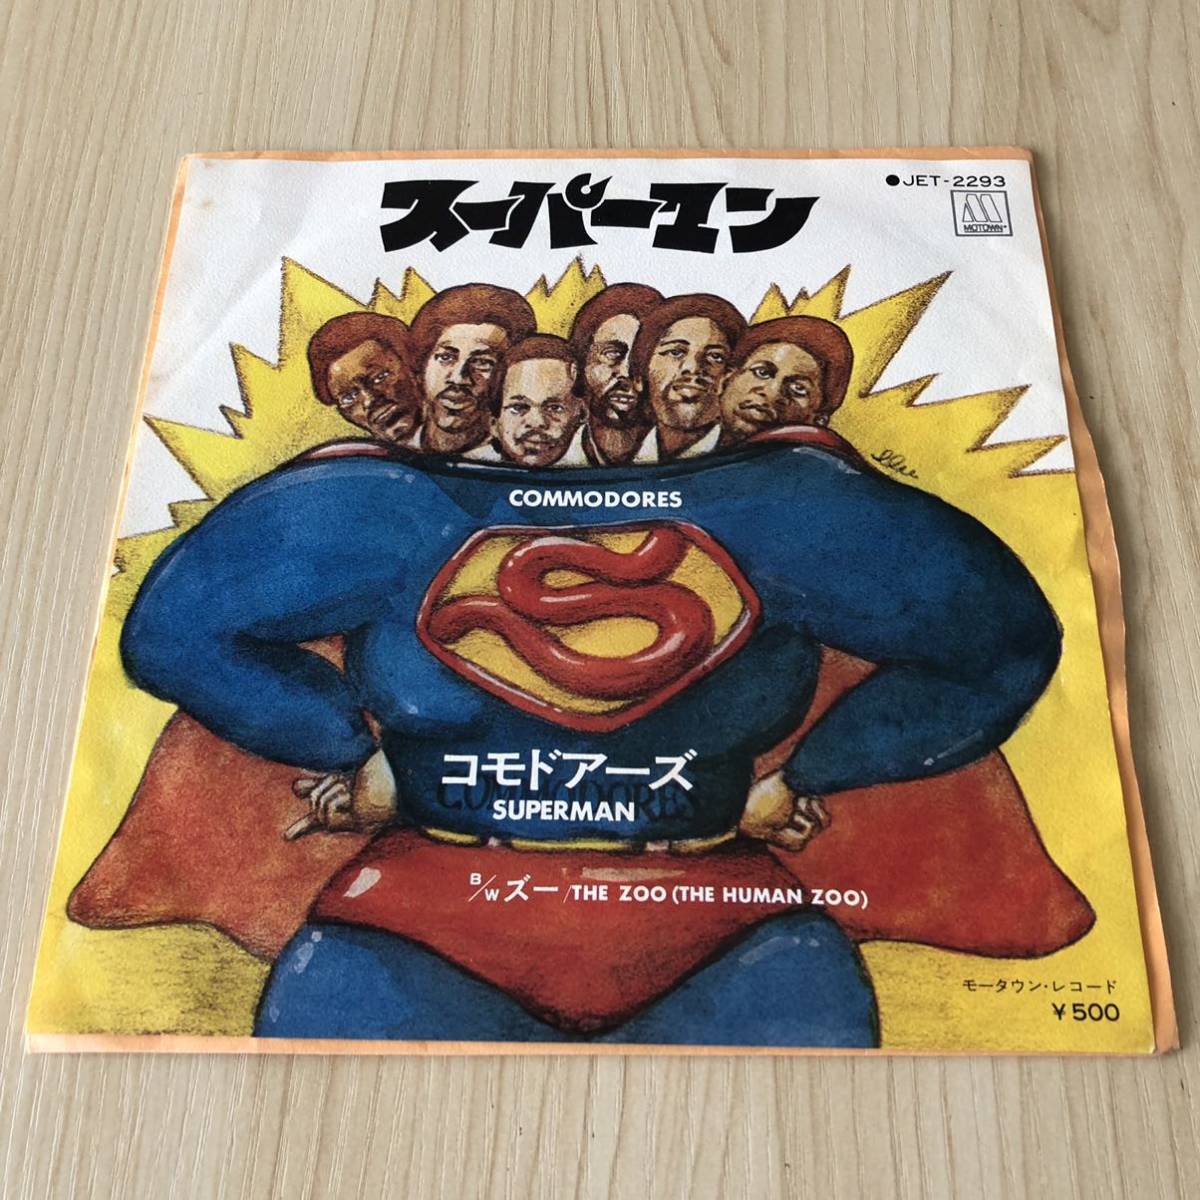 【国内盤7inch】コモドアーズ スーパーマン COMMODORES SUPERMAN THE ZOO / EP レコード / JET2293 / 洋楽ディスコクラブ /_画像1